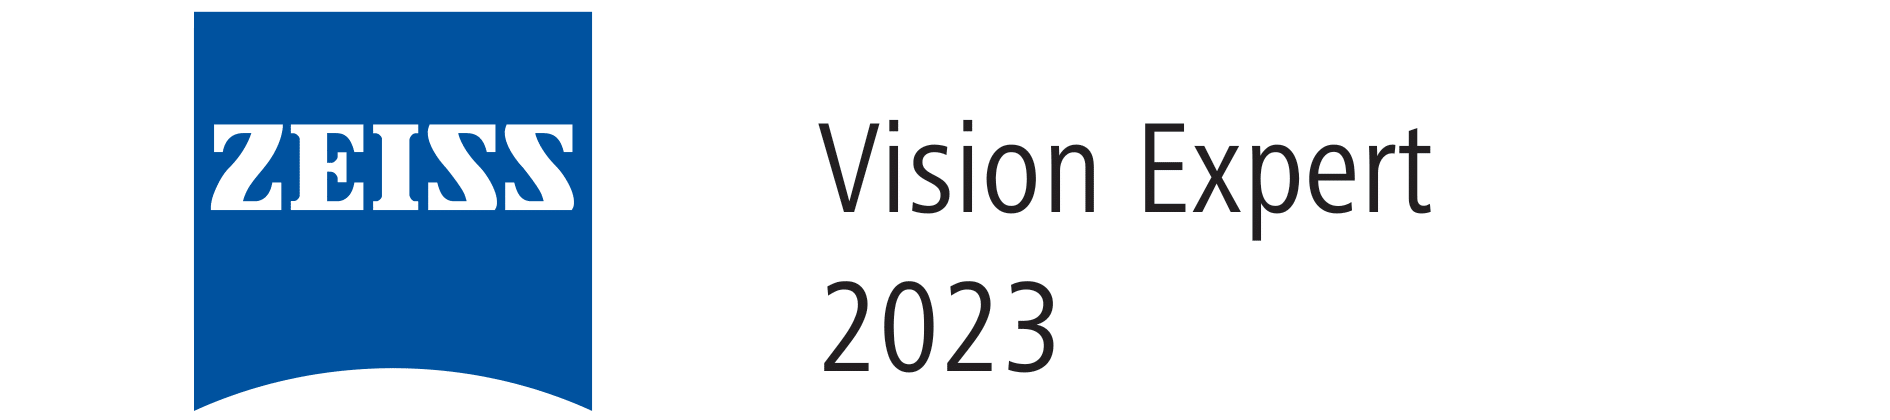 ZEISS Vision Expert logó